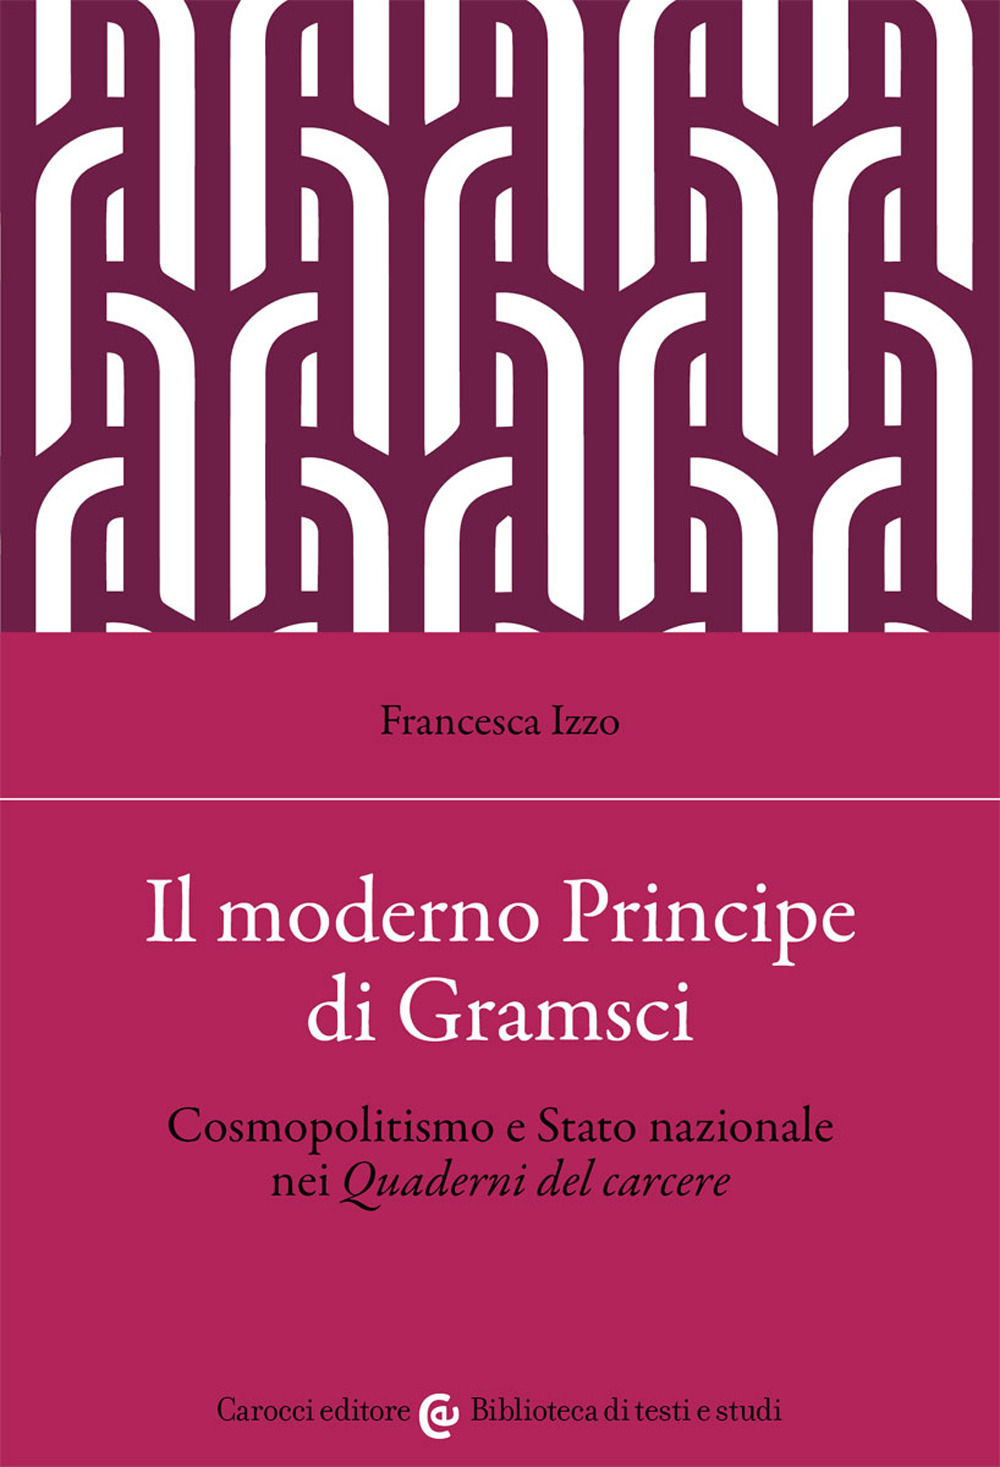 Il moderno principe di Gramsci